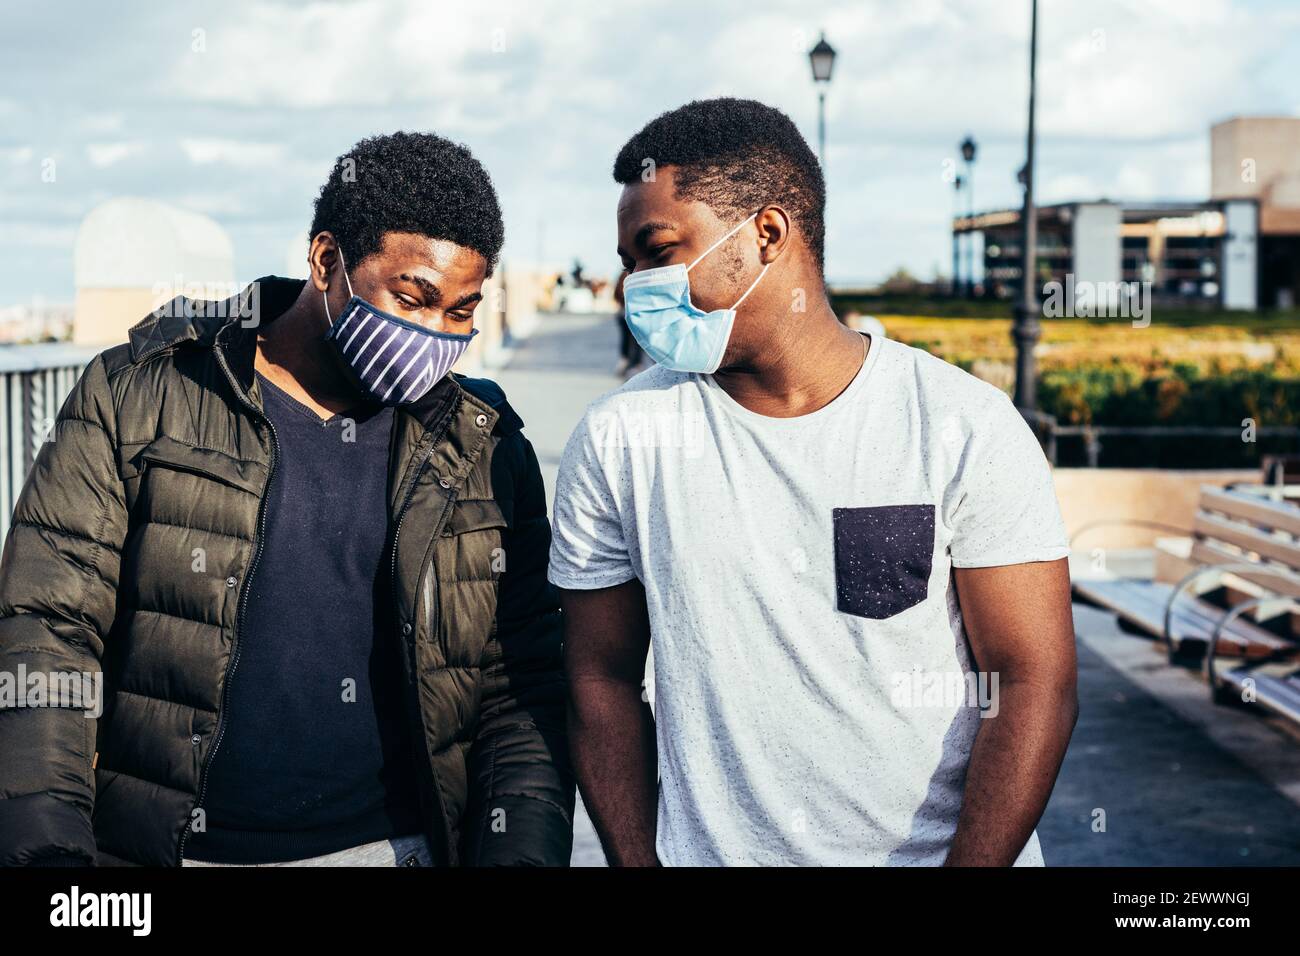 Portrait de deux amis afro-américains avec masque facial s'amusant dans un espace urbain. Banque D'Images